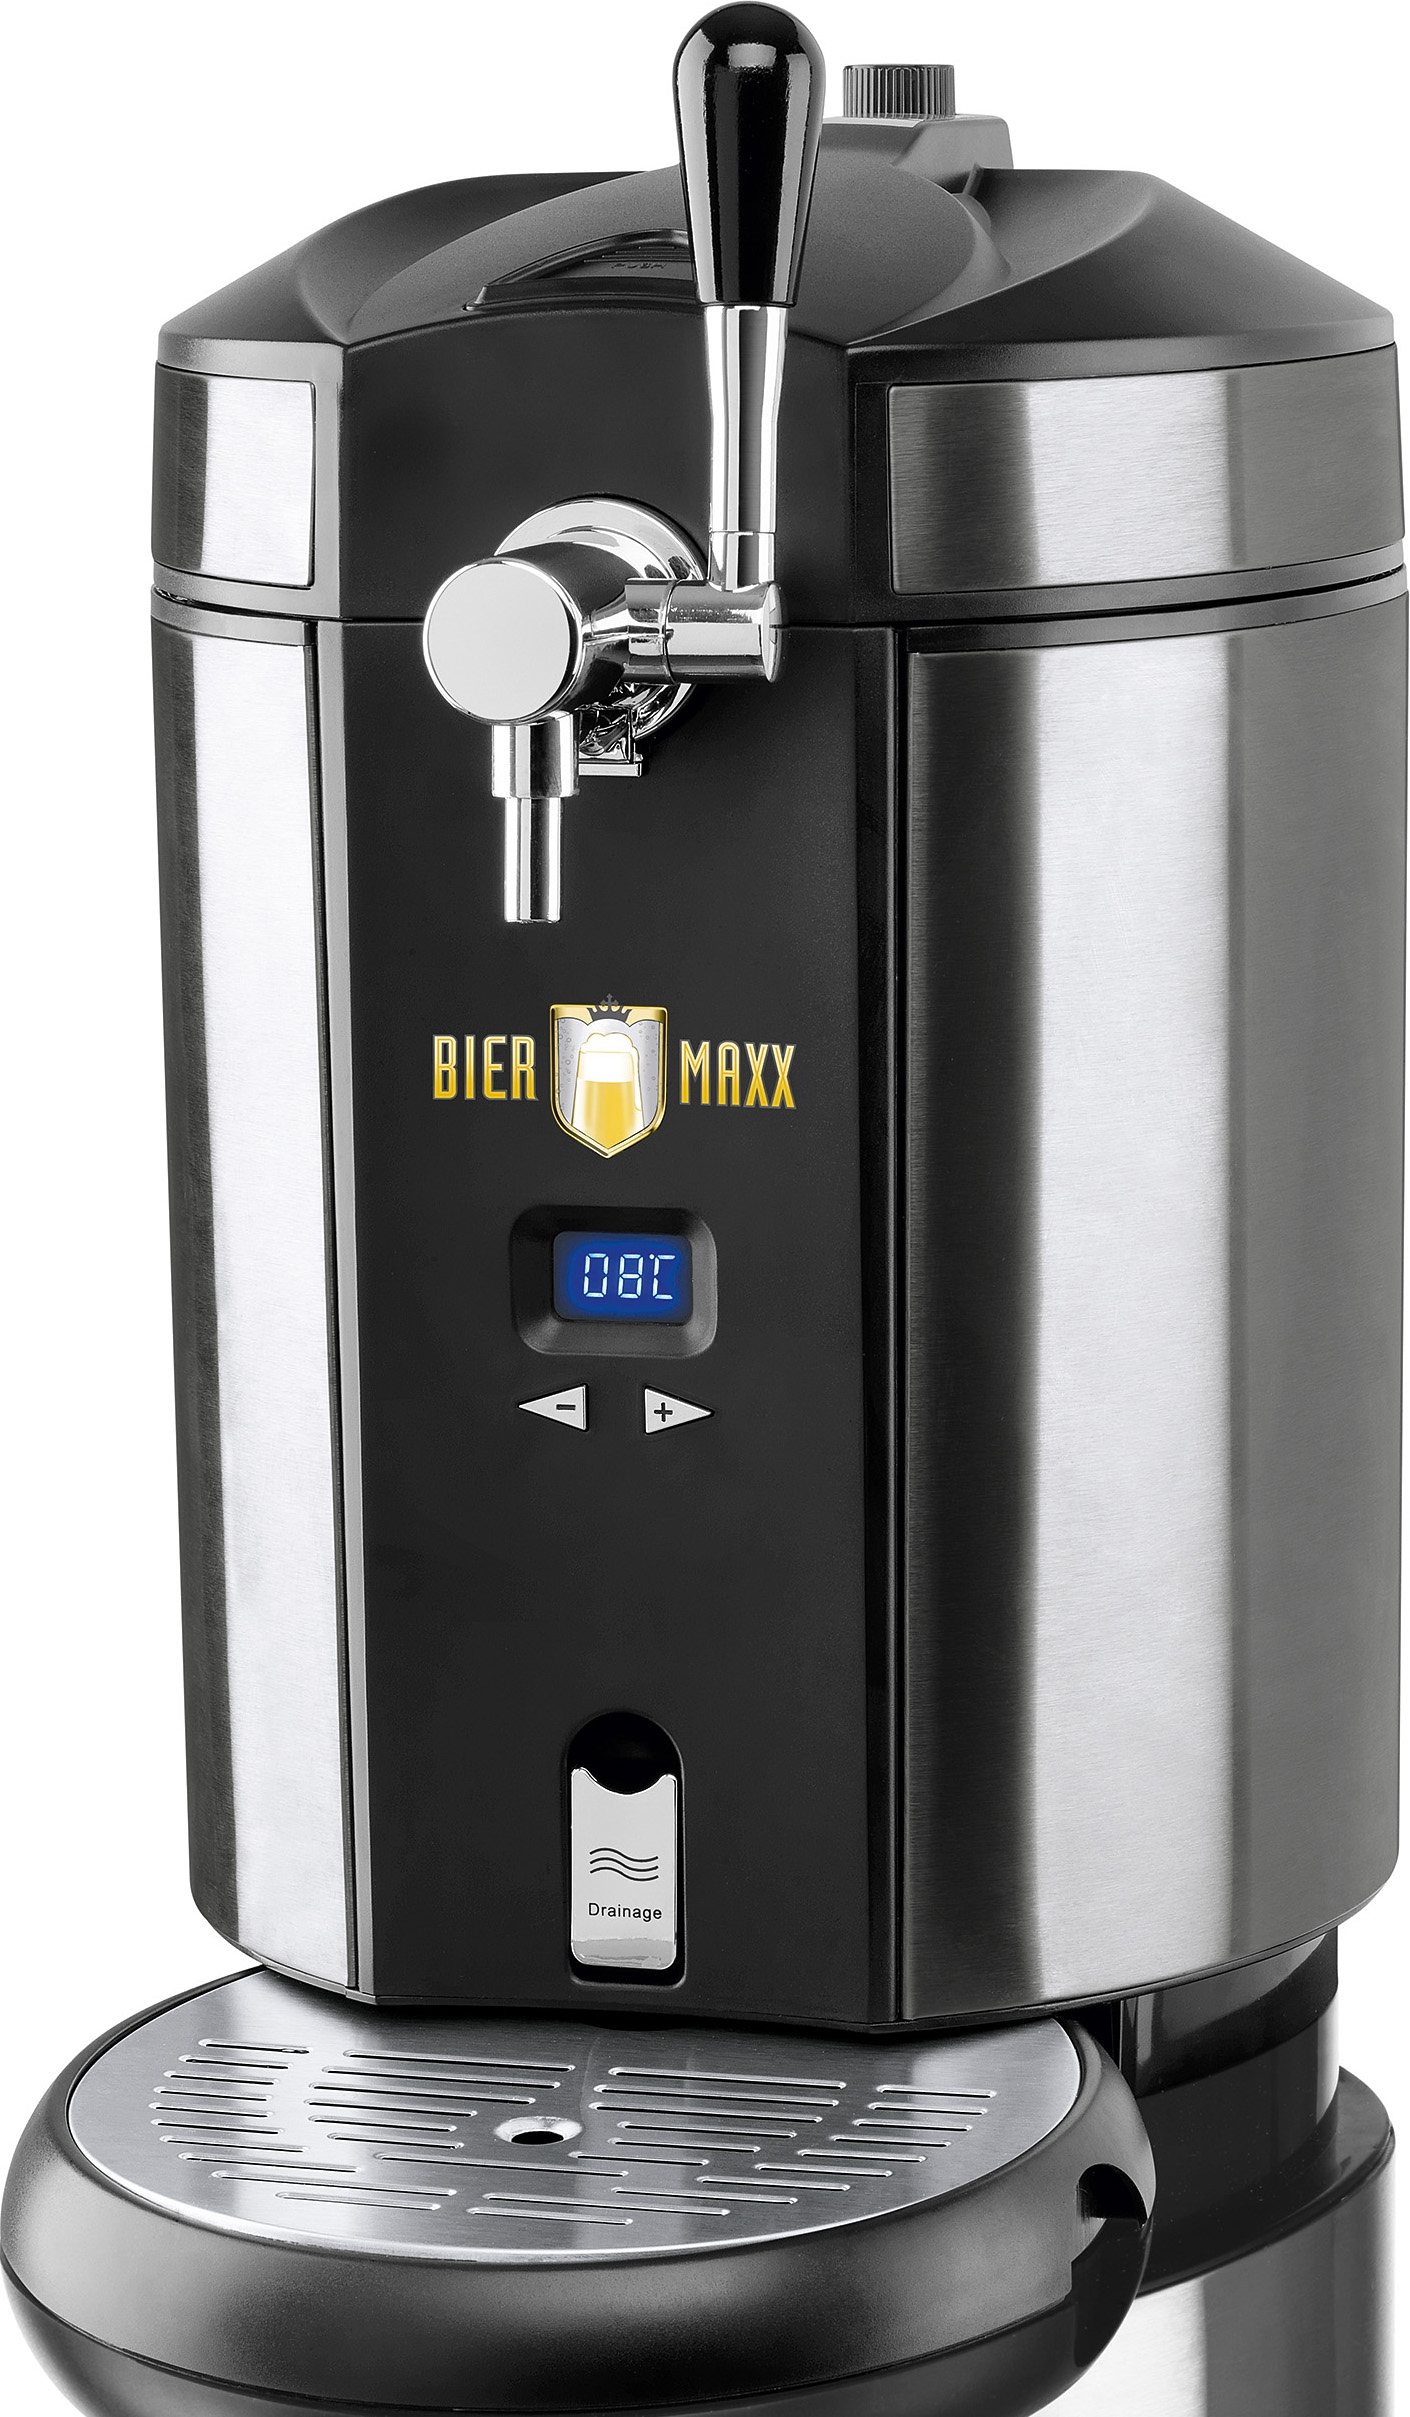 Biermaxx Zapfanlage Bierzapfanlage Bier Maxx für 5l Partyfässer NEU OVP 